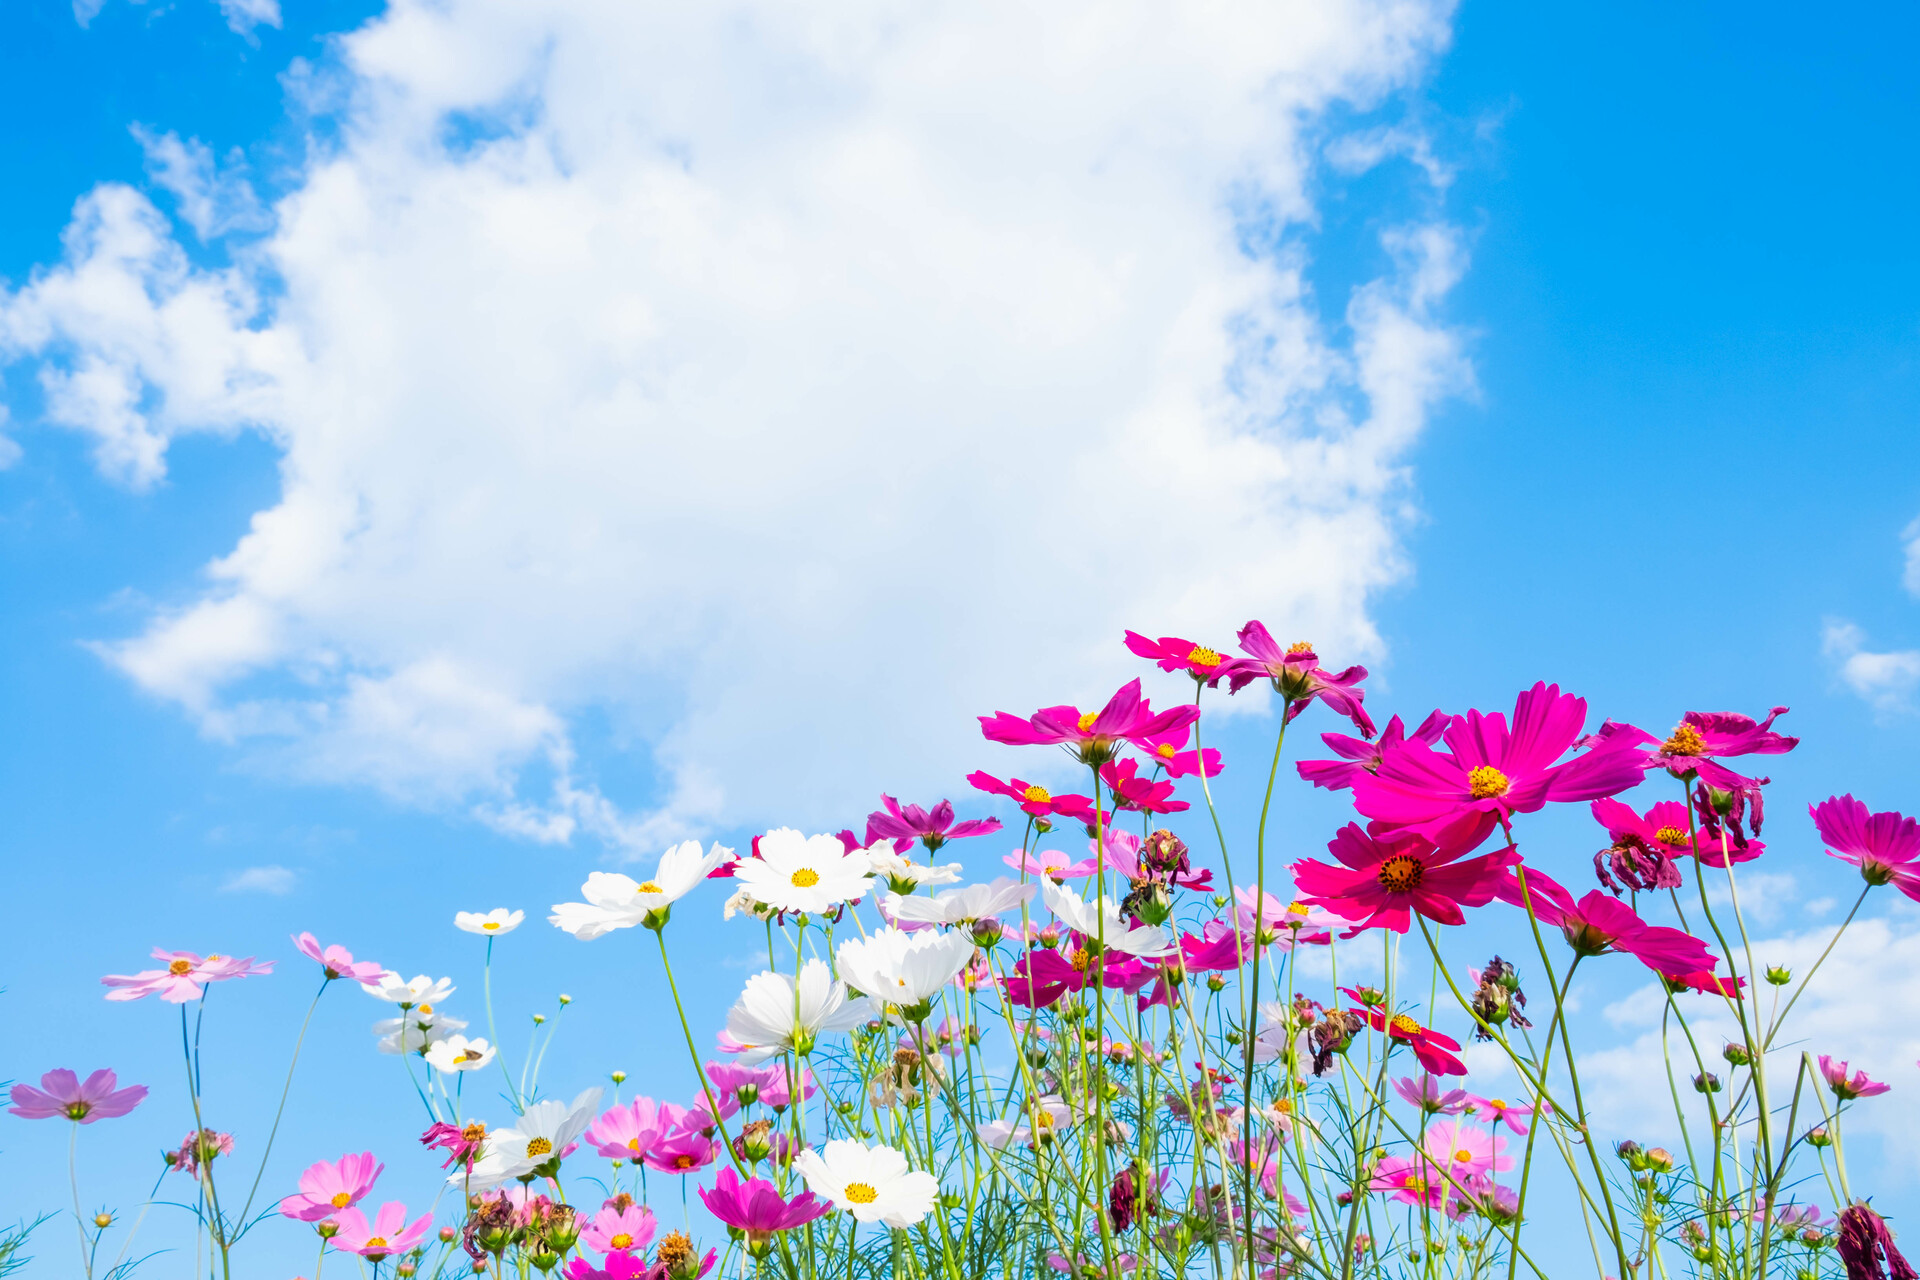 Na zdjęciu widoczne są piękne kolorowe wiosenne kwiaty, które prezentują się olśniewająco na tle niebieskiego nieba. Kwiaty te przyciągają uwagę swoimi intensywnymi kolorami i pięknymi kształtami, dodając ogrodowi uroku i koloru. Taki obrazek może być inspiracją dla miłośników ogrodnictwa, którzy pragną stworzyć w swoim ogrodzie wiosenny klimat i cieszyć się pięknem kwiatów przez cały sezon.